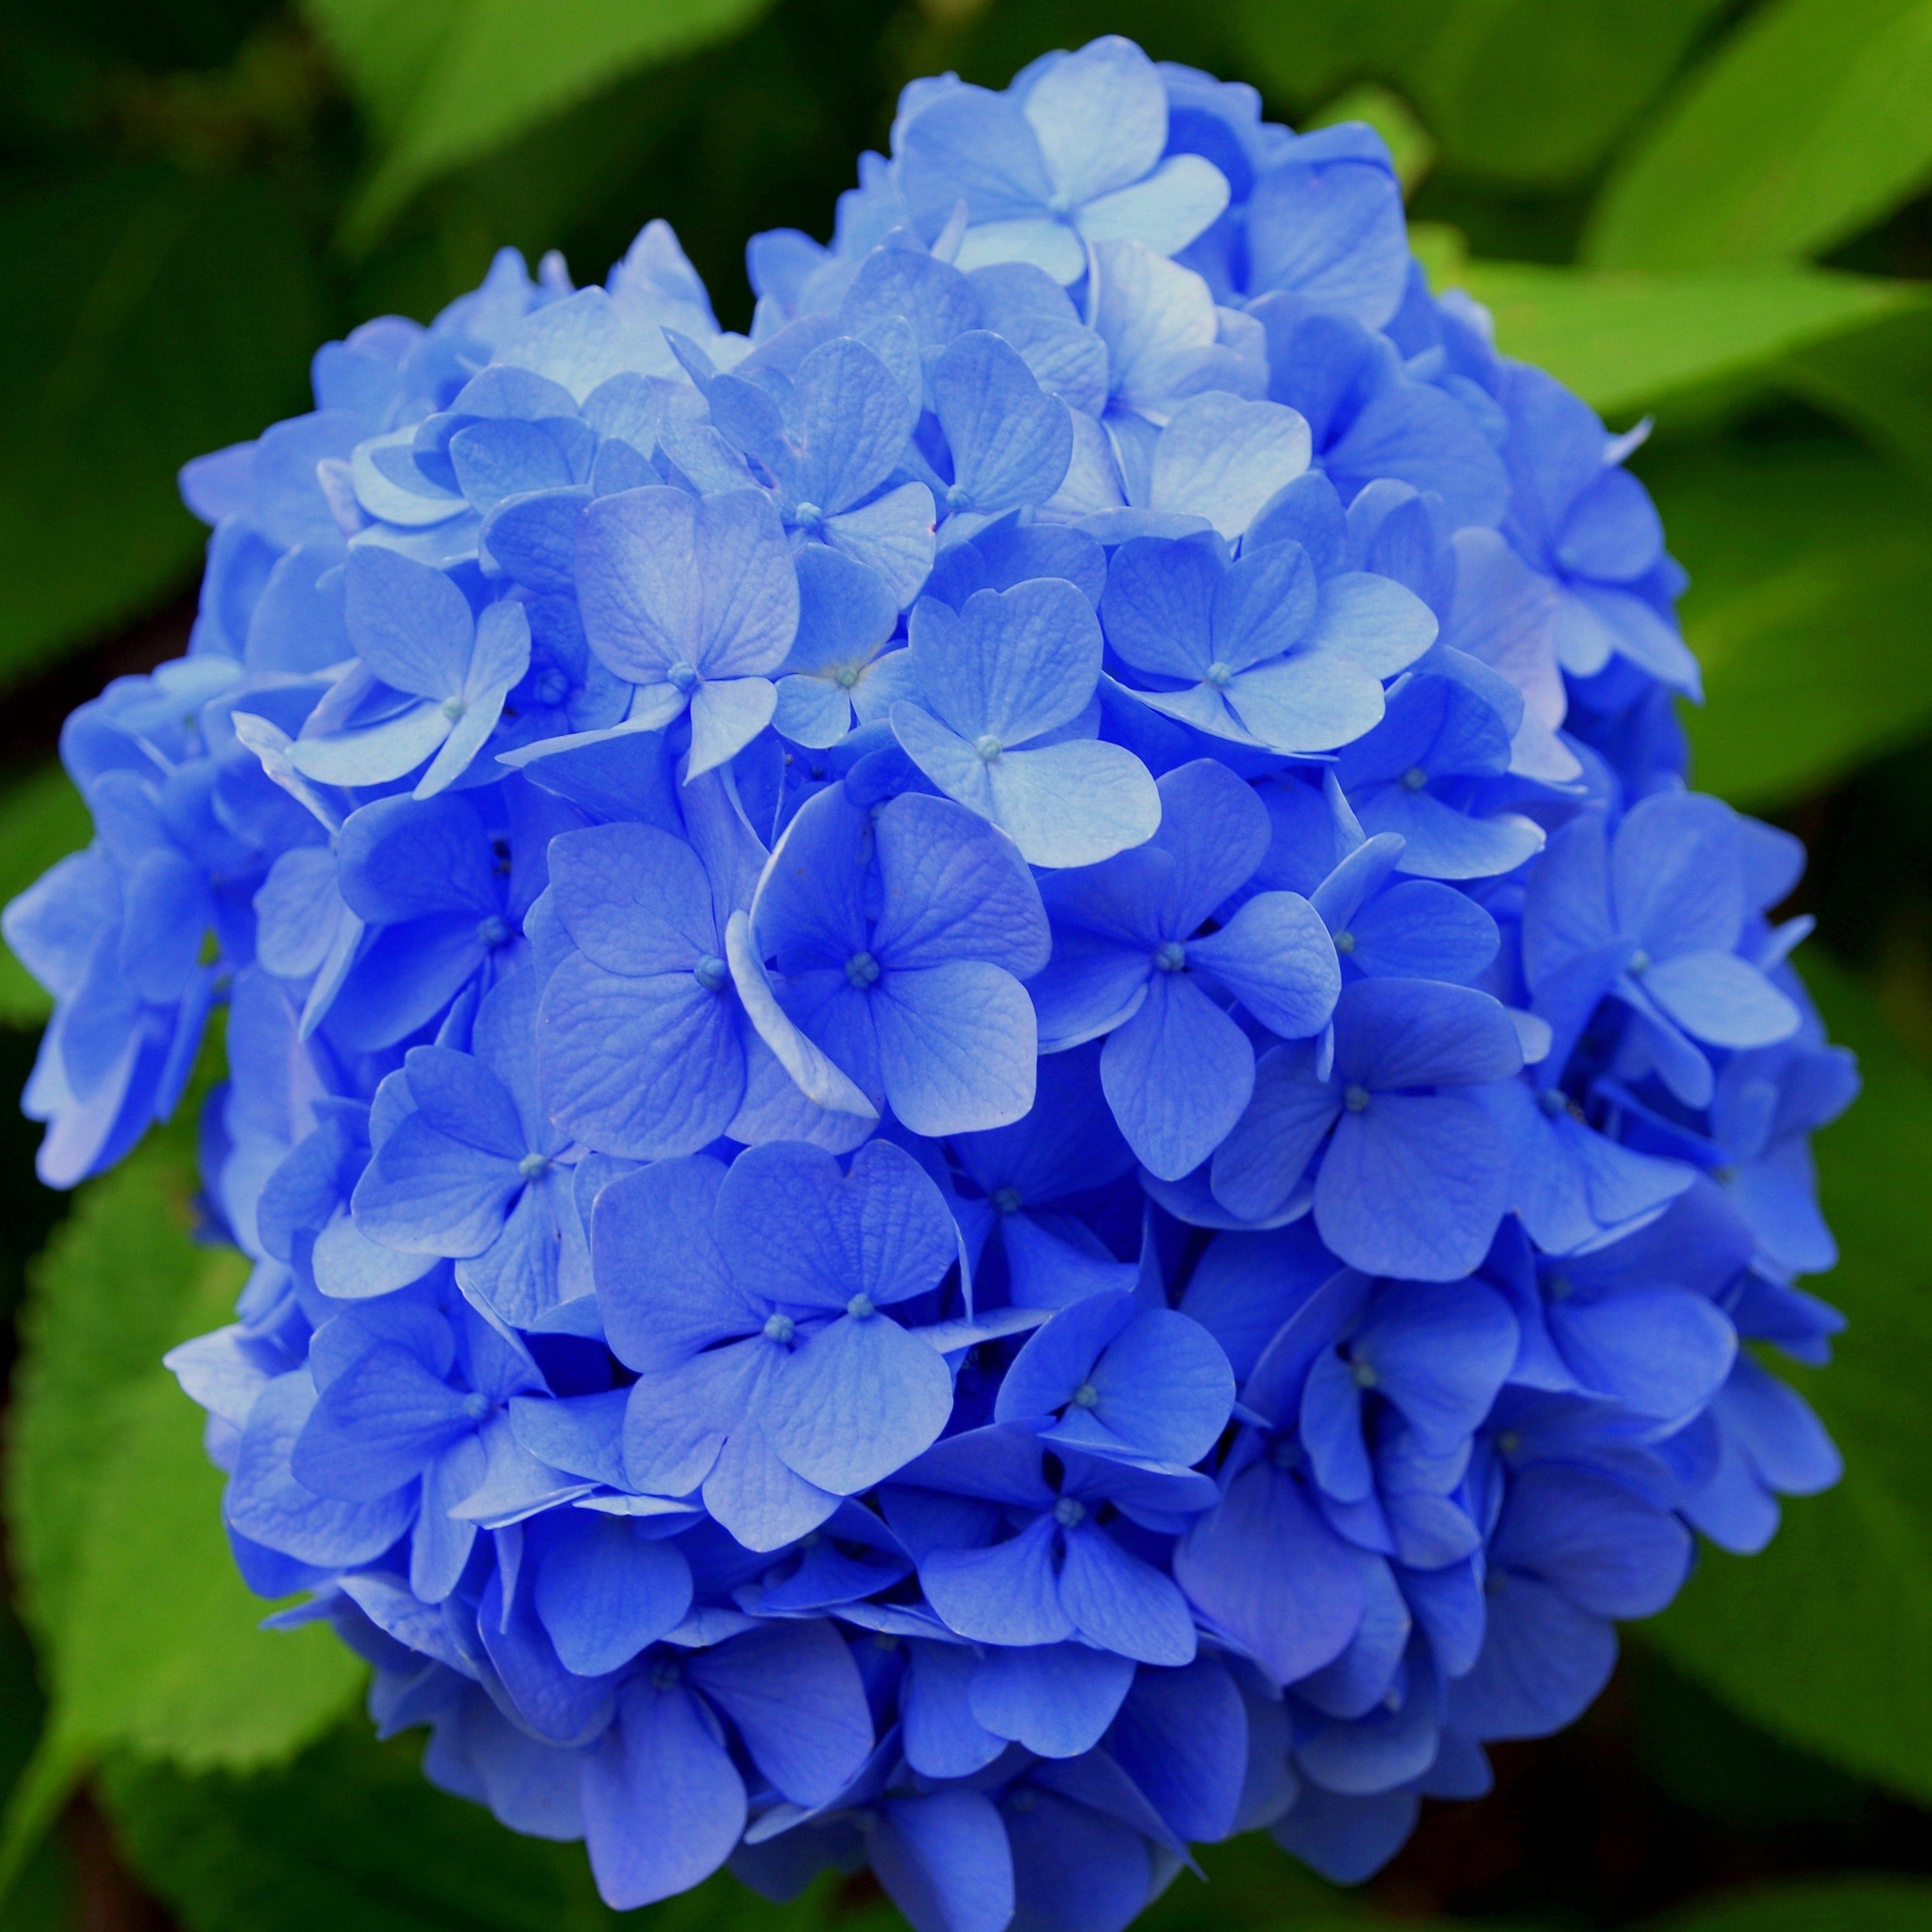 Blå hortensia (Hydrangea Macrophylla Blaumeise) kendetegnes ved de store, smukke blomsterskærme i blå og blållige nuancer og med pæne grønne blade her flot klar blå farve